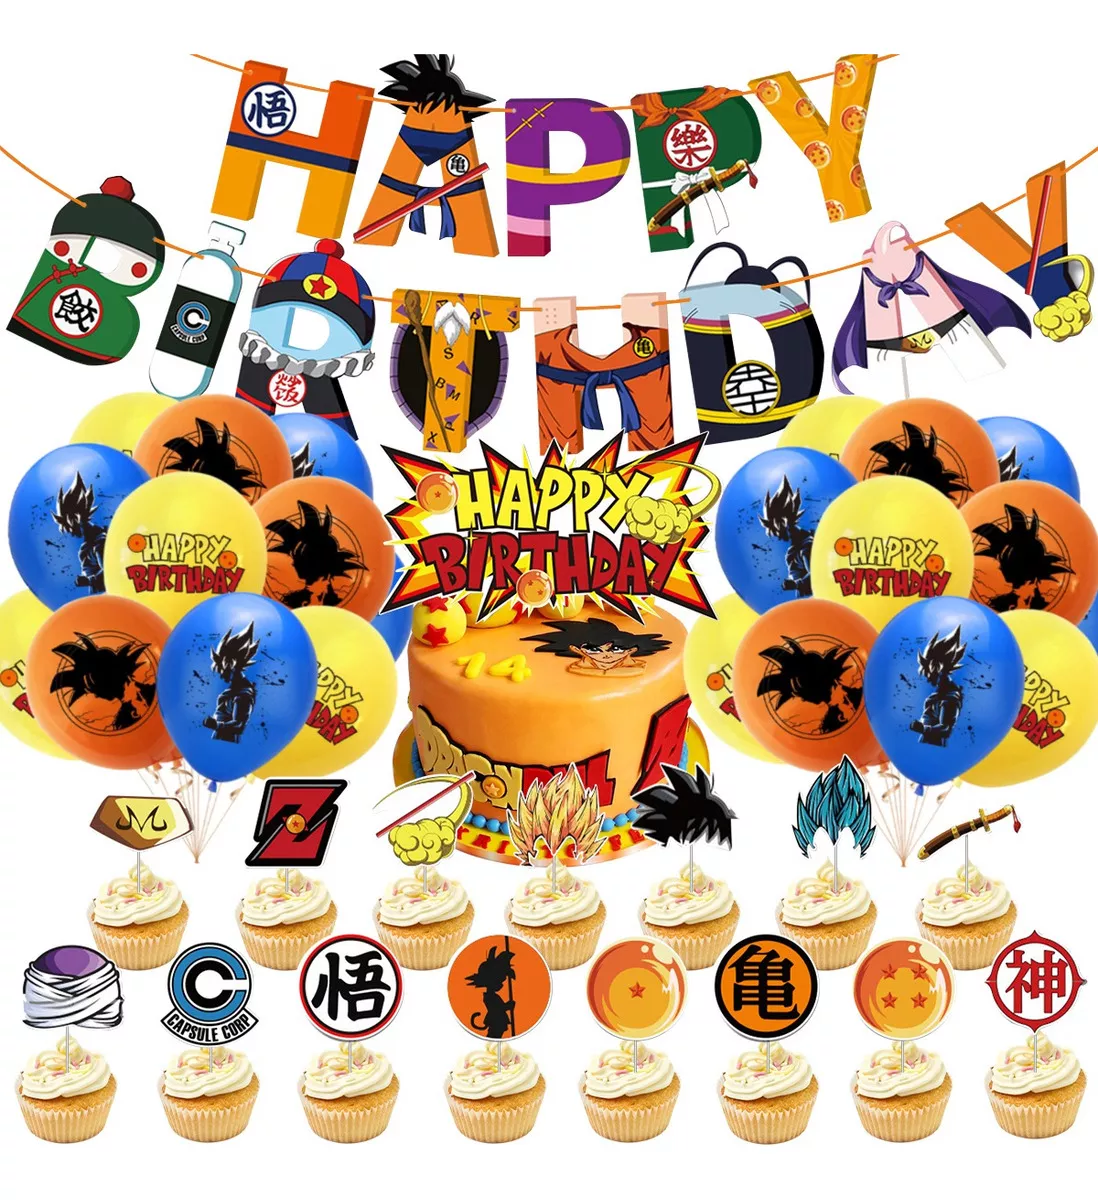 Tercera imagen para búsqueda de globos feliz cumpleaños